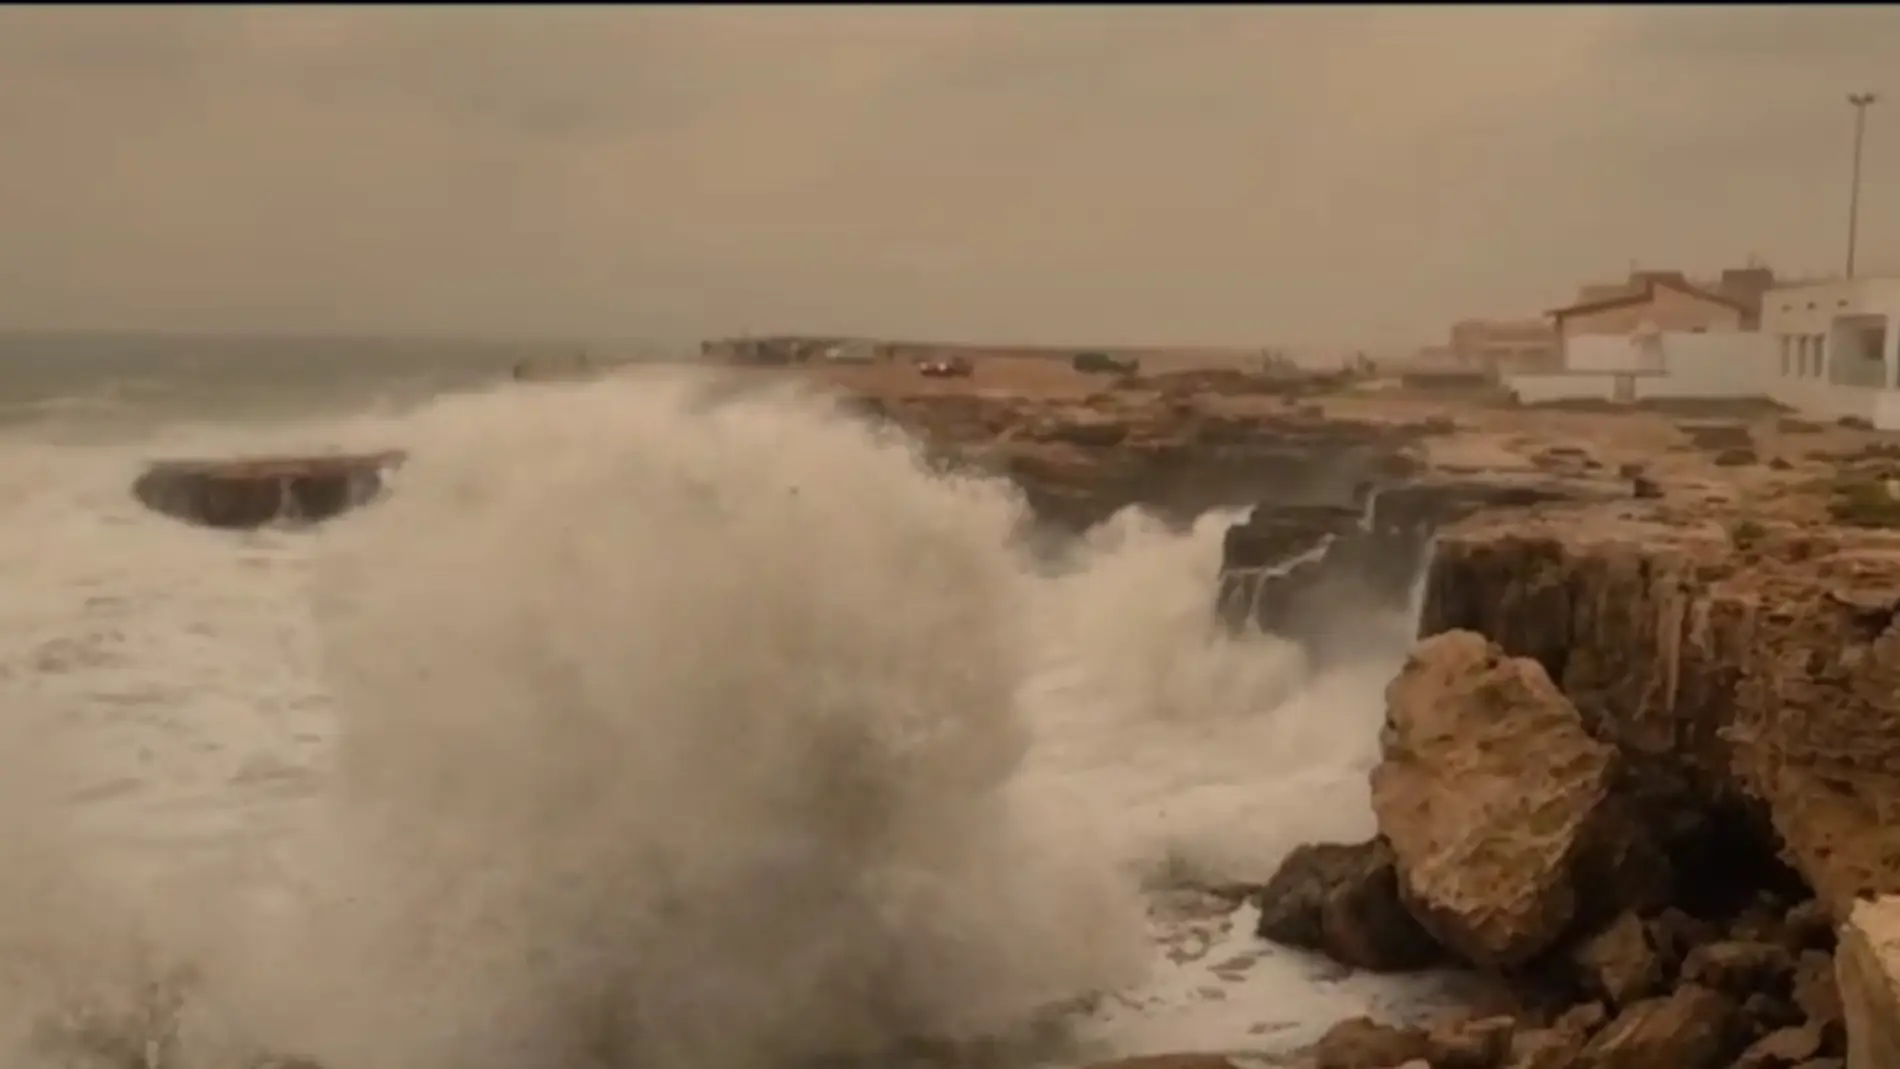 Fuerte oleaje en las Calas de Torrevieja a consecuencia del temporal marítimo asociado a la DANA